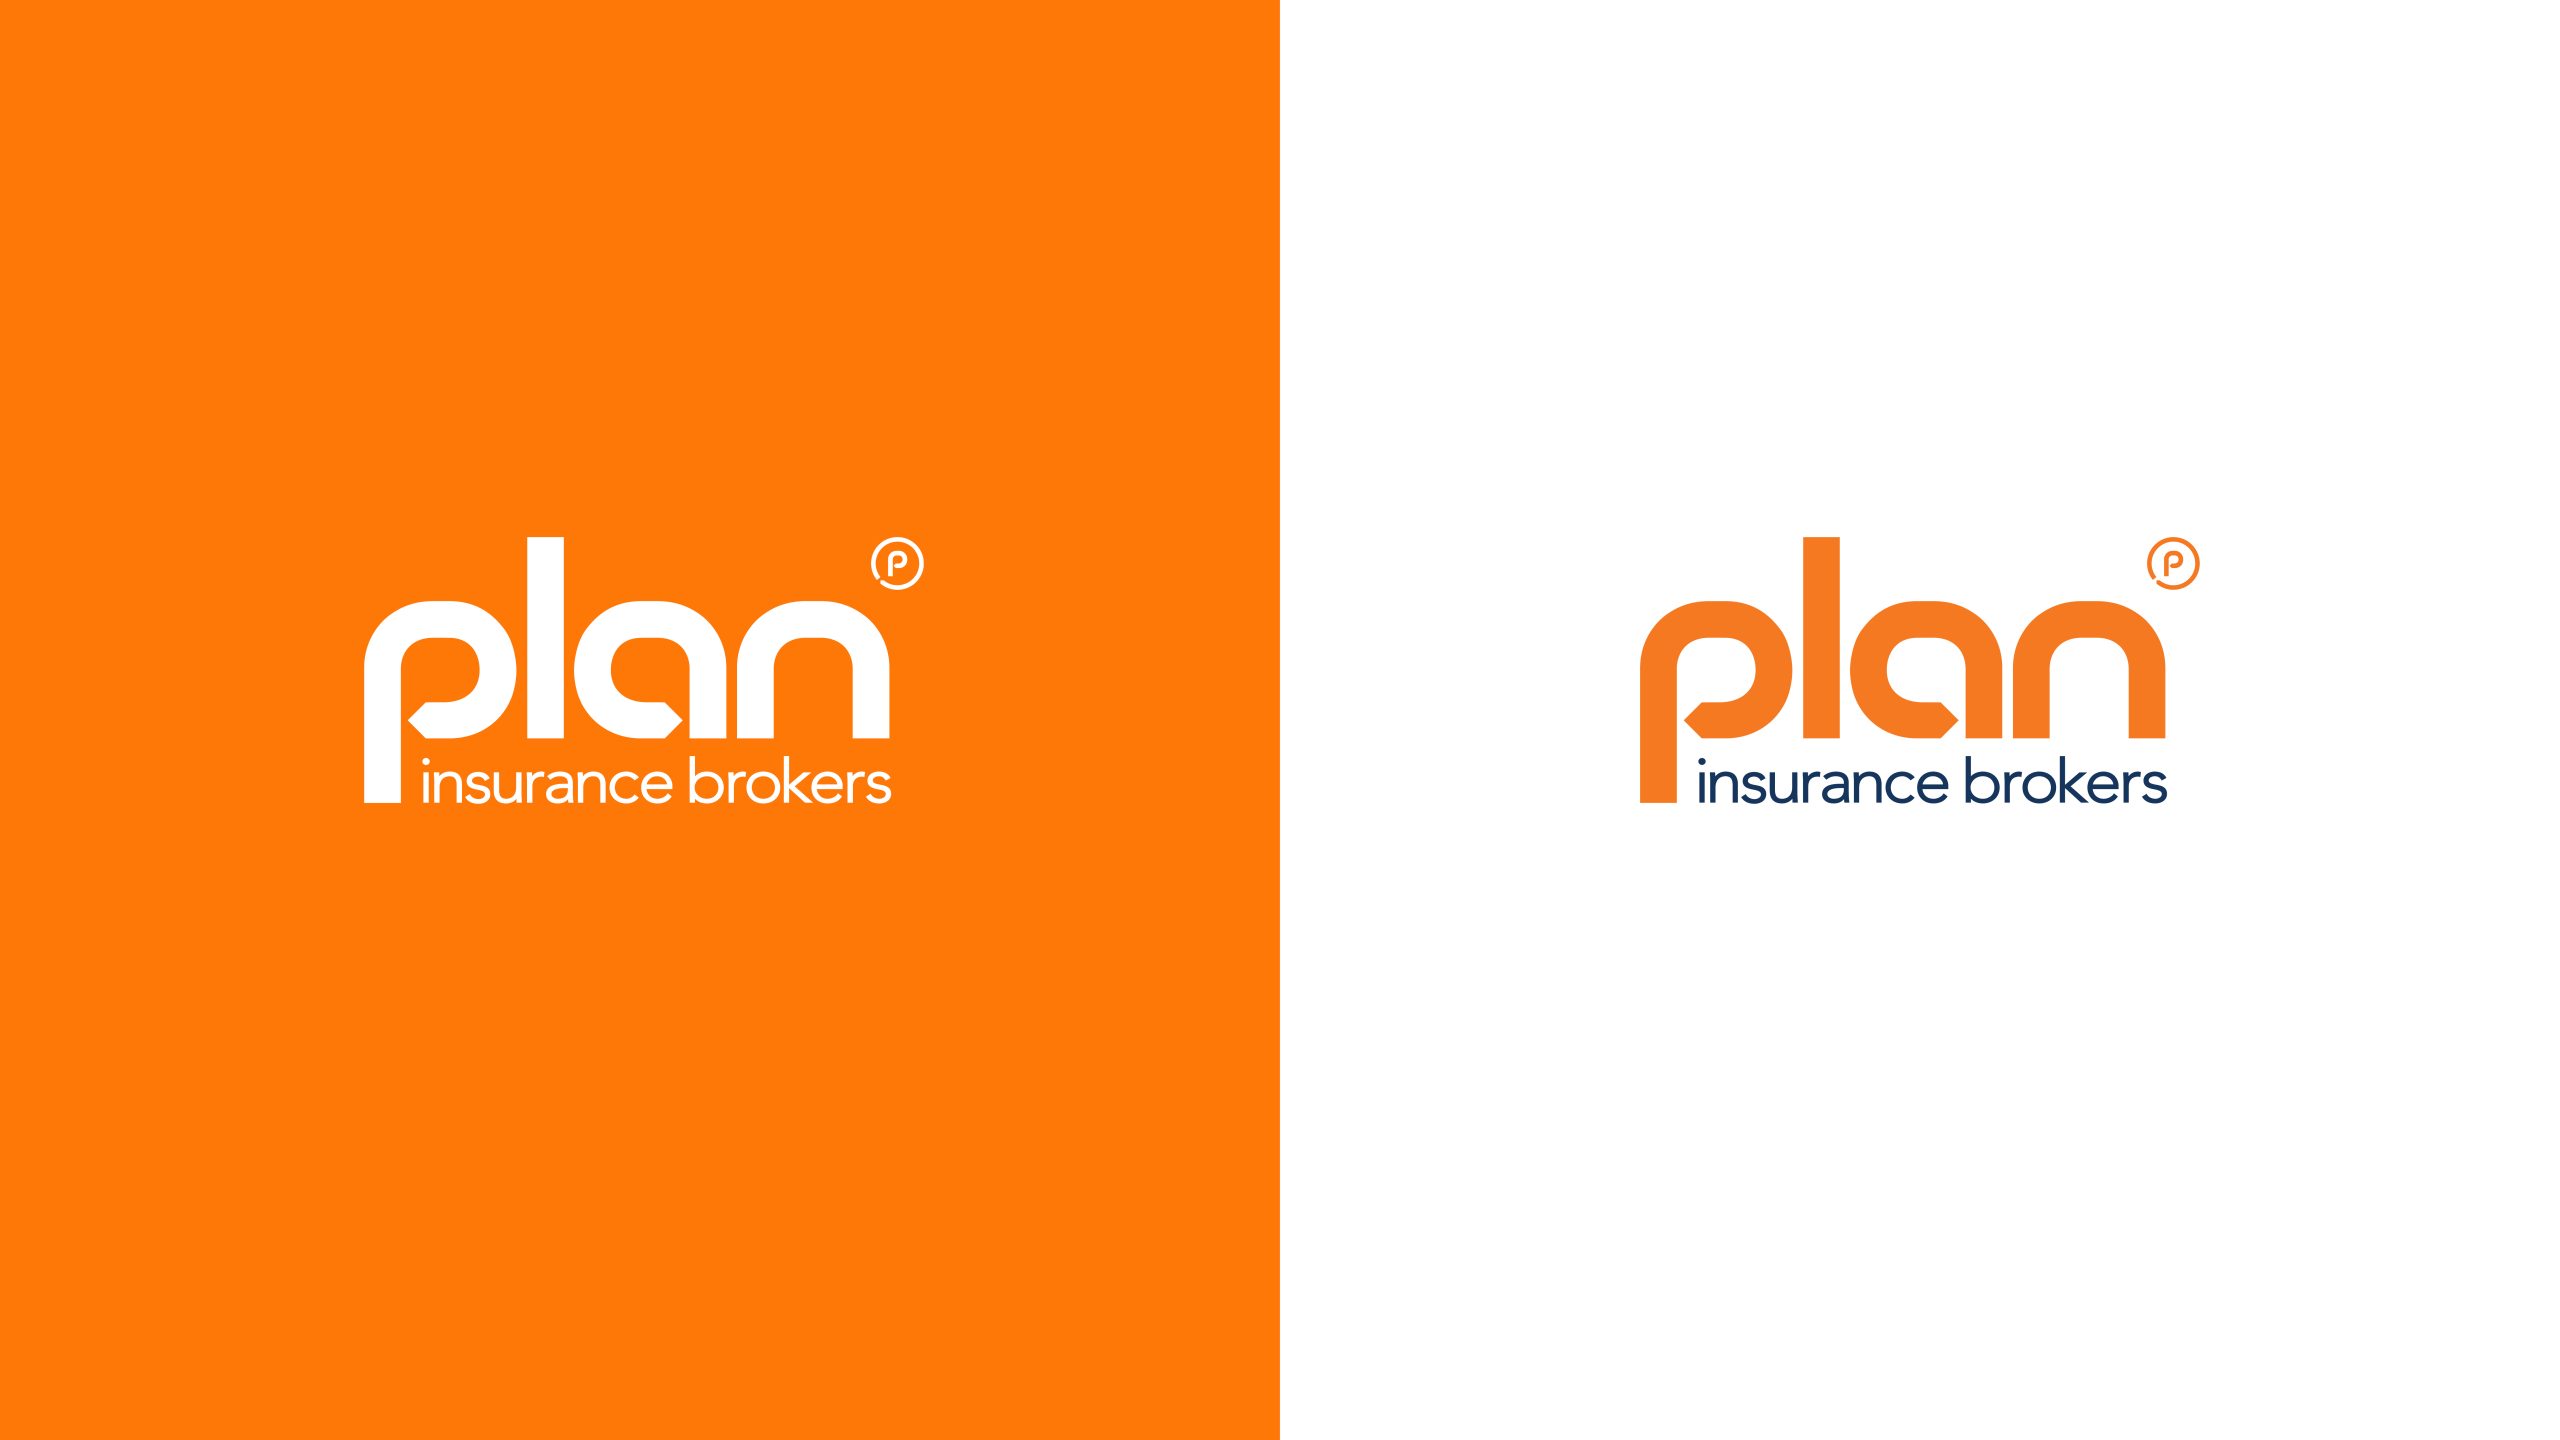 Plan Logos on Orange & White